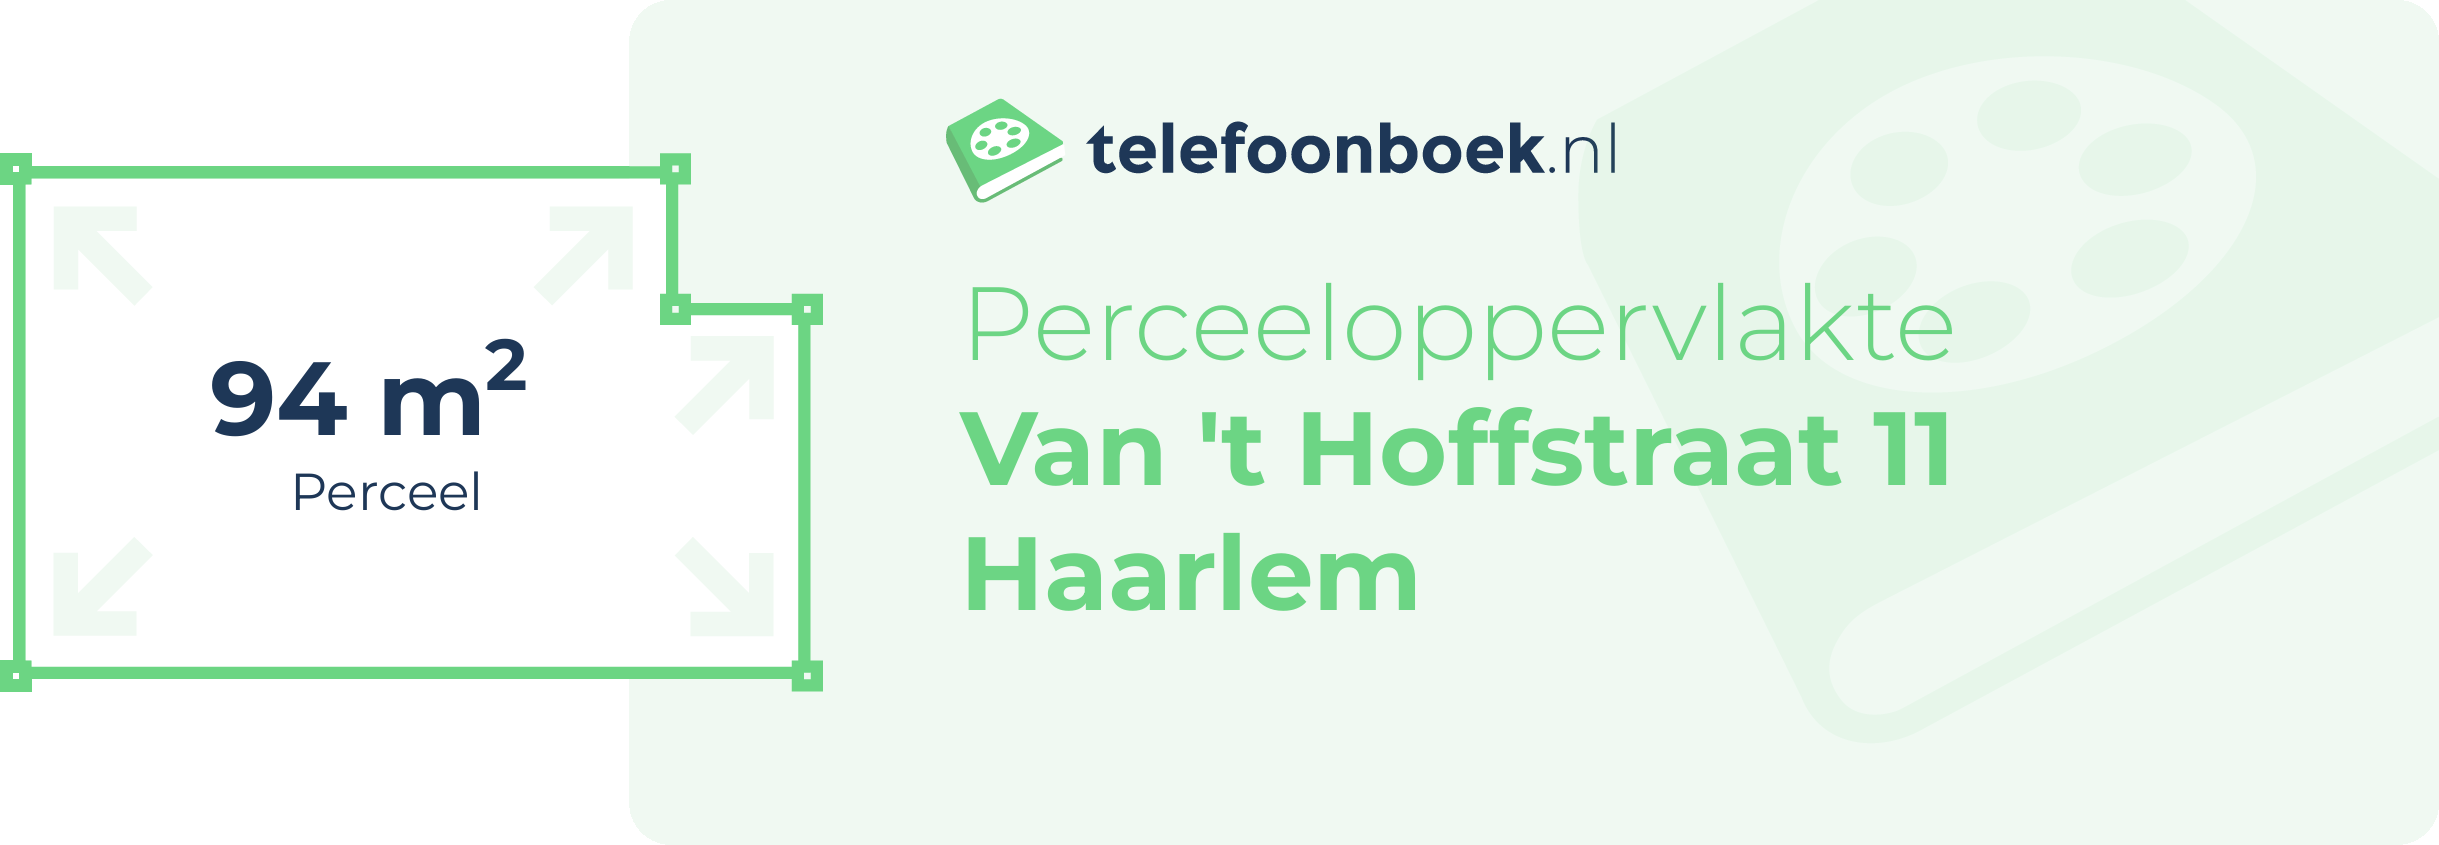 Perceeloppervlakte Van 't Hoffstraat 11 Haarlem